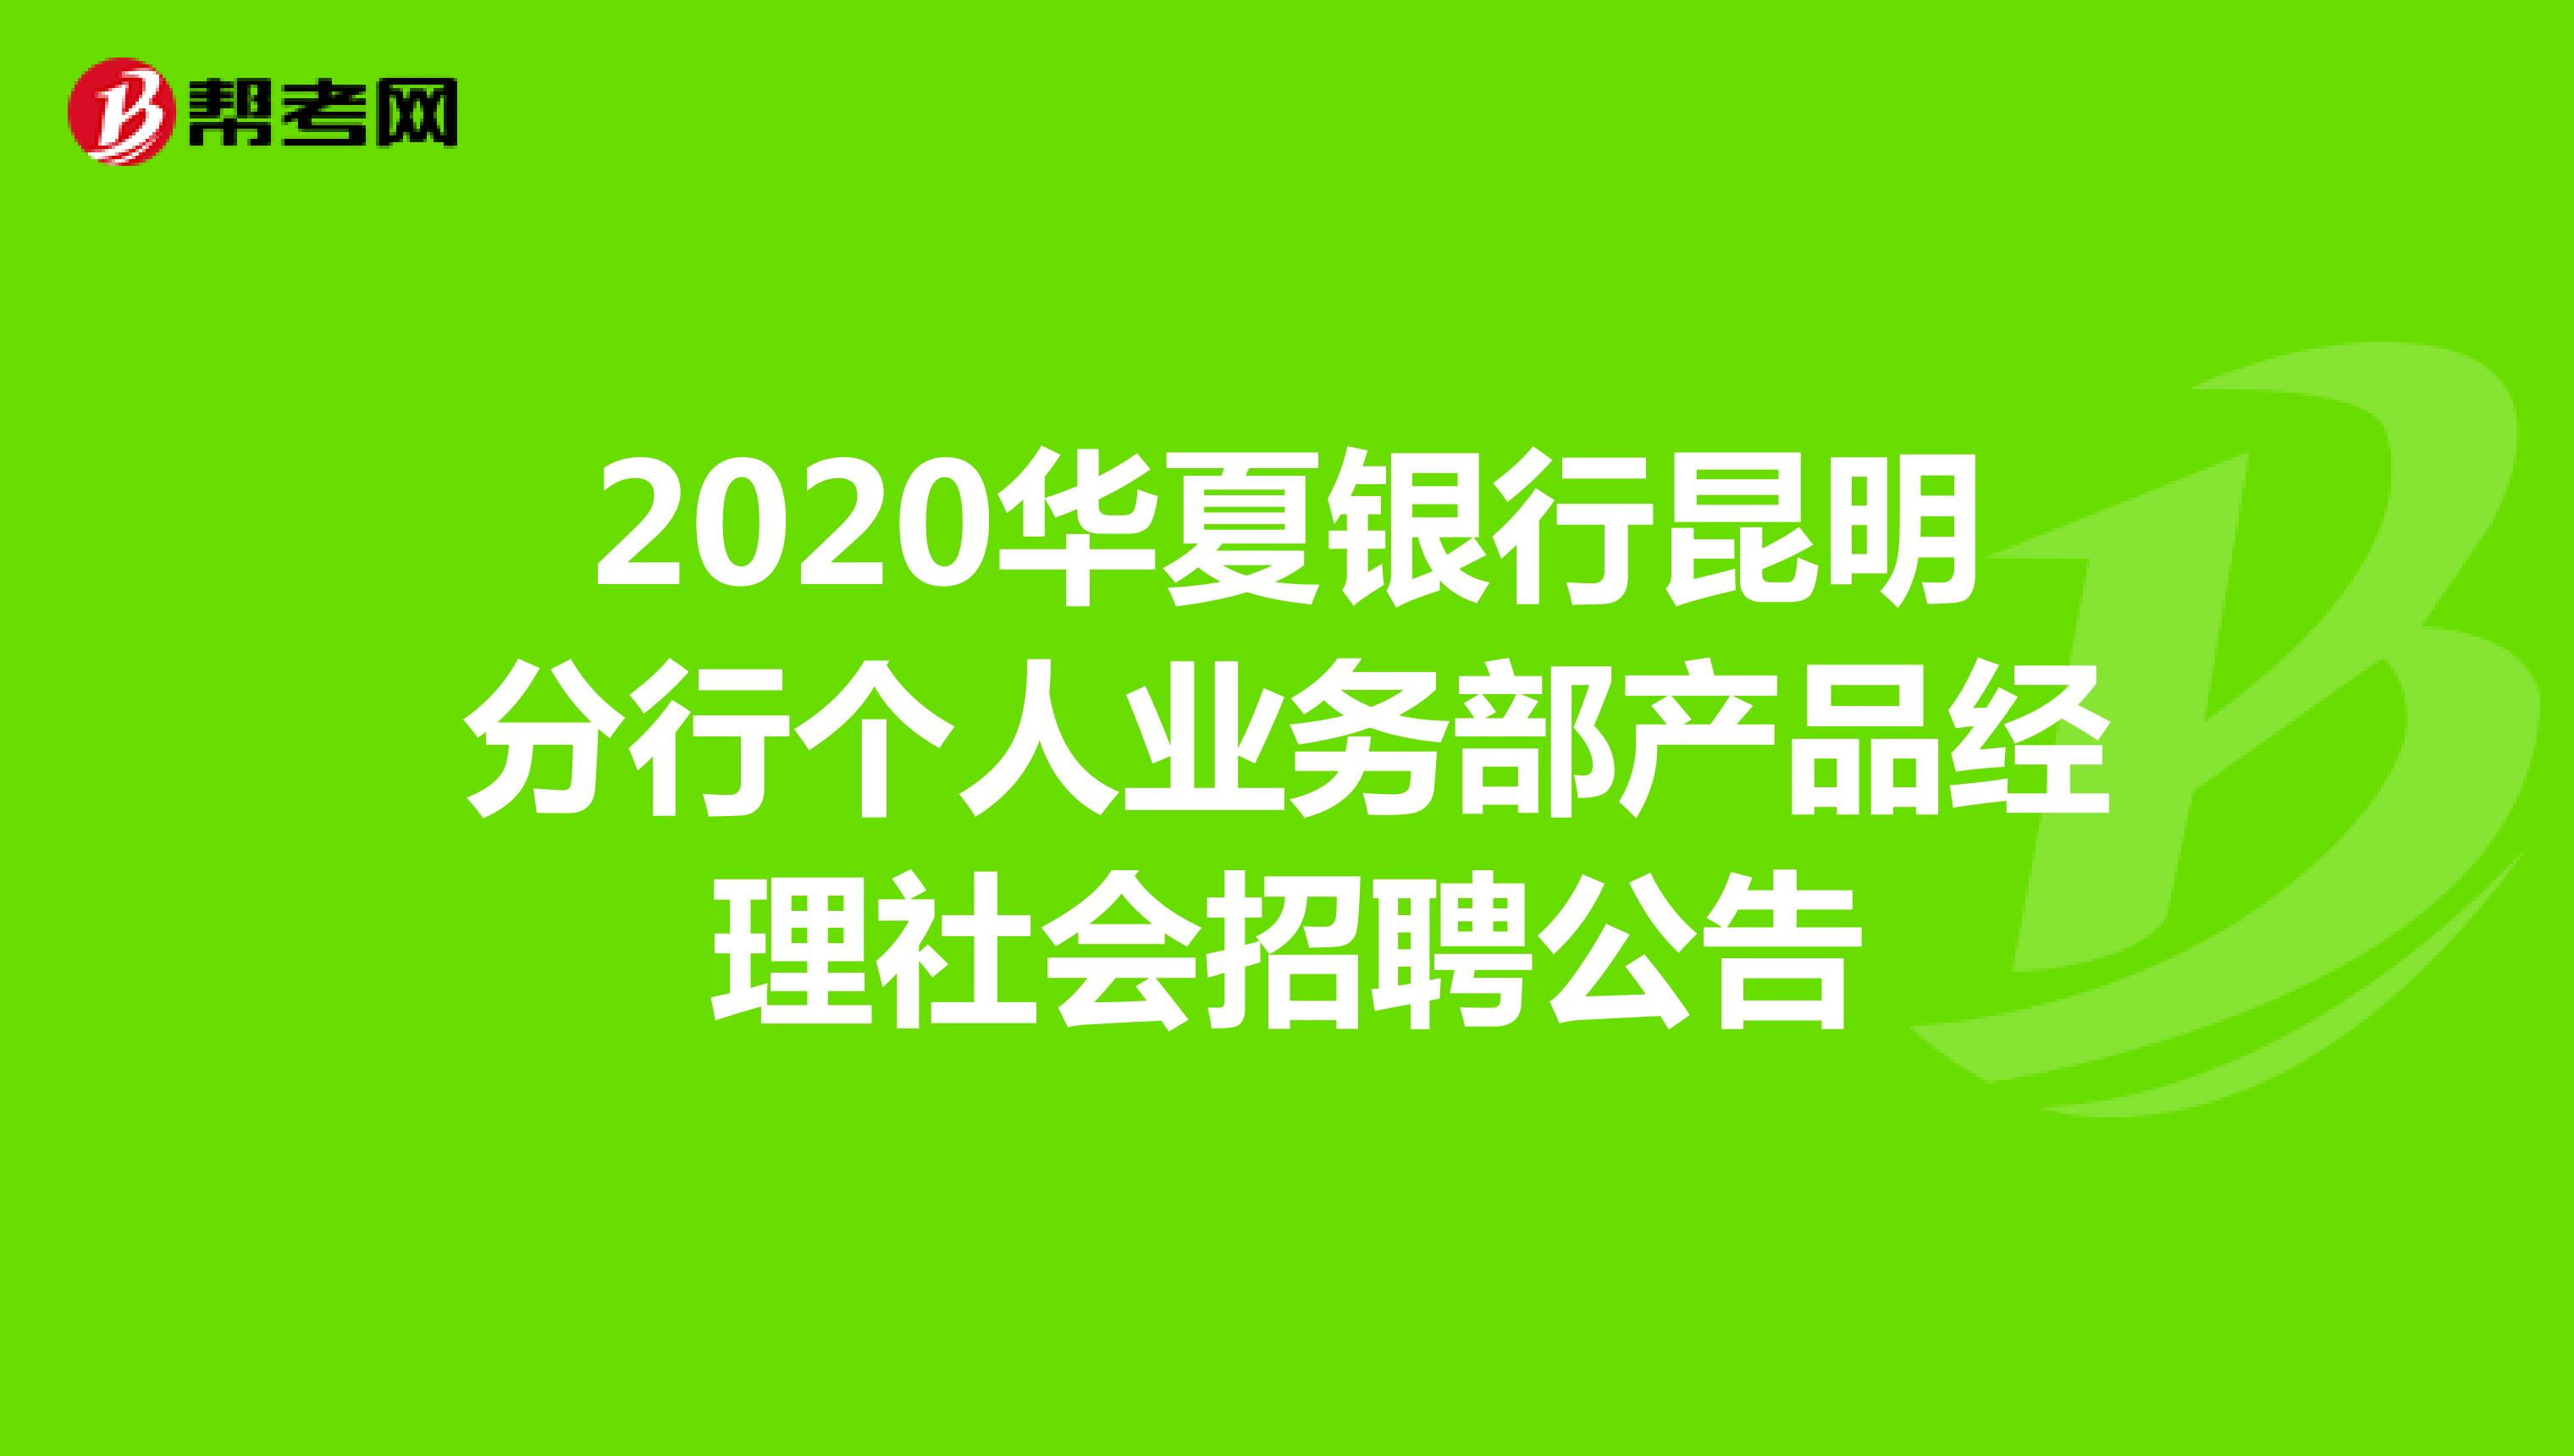 2020华夏银行昆明分行个人业务部产品经理社会招聘公告